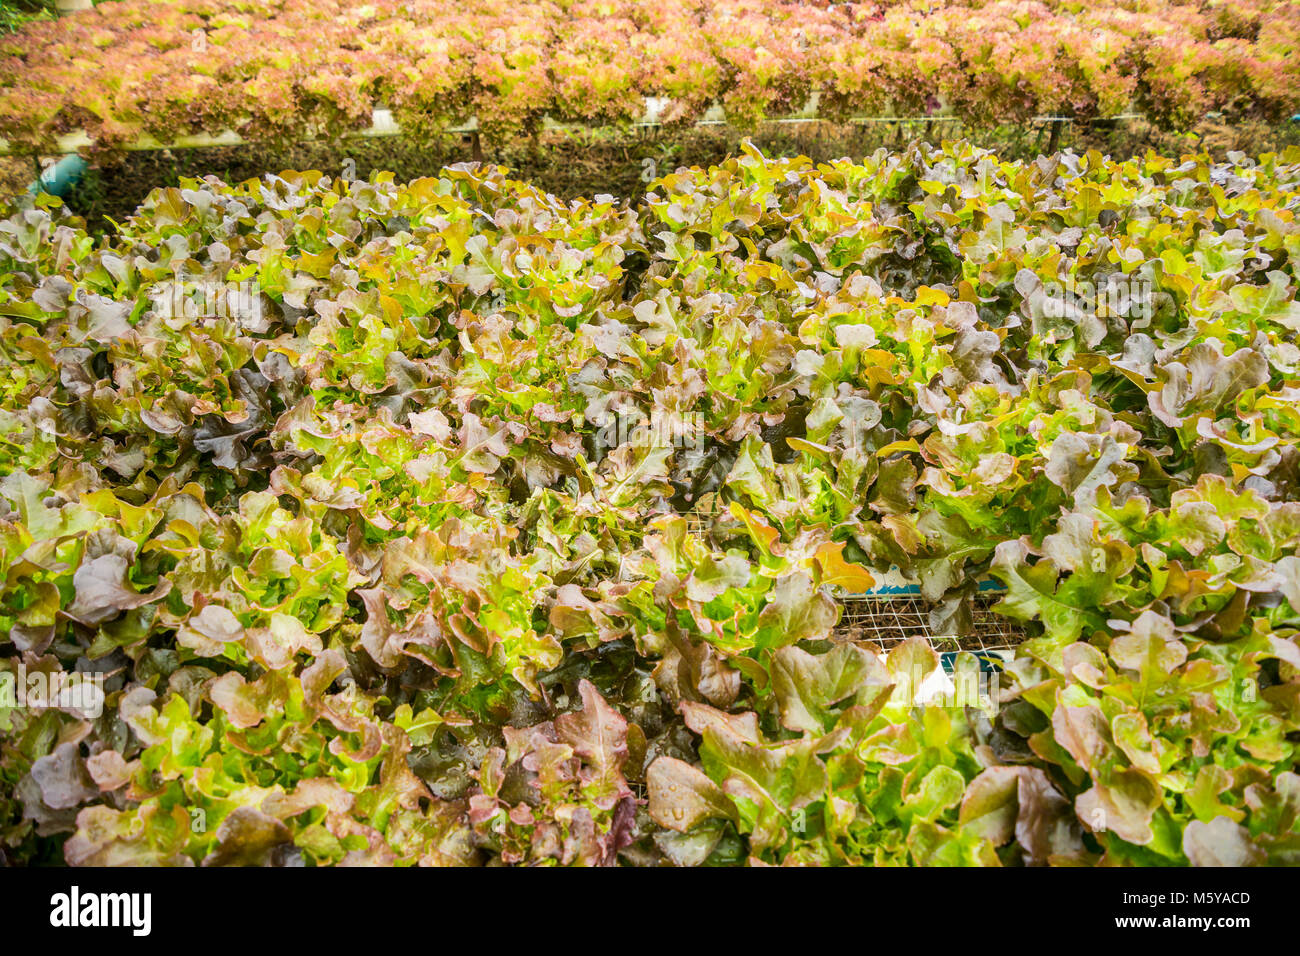 Hydroponics farm vegetali per la salute nelle zone rurali della Thailandia Foto Stock